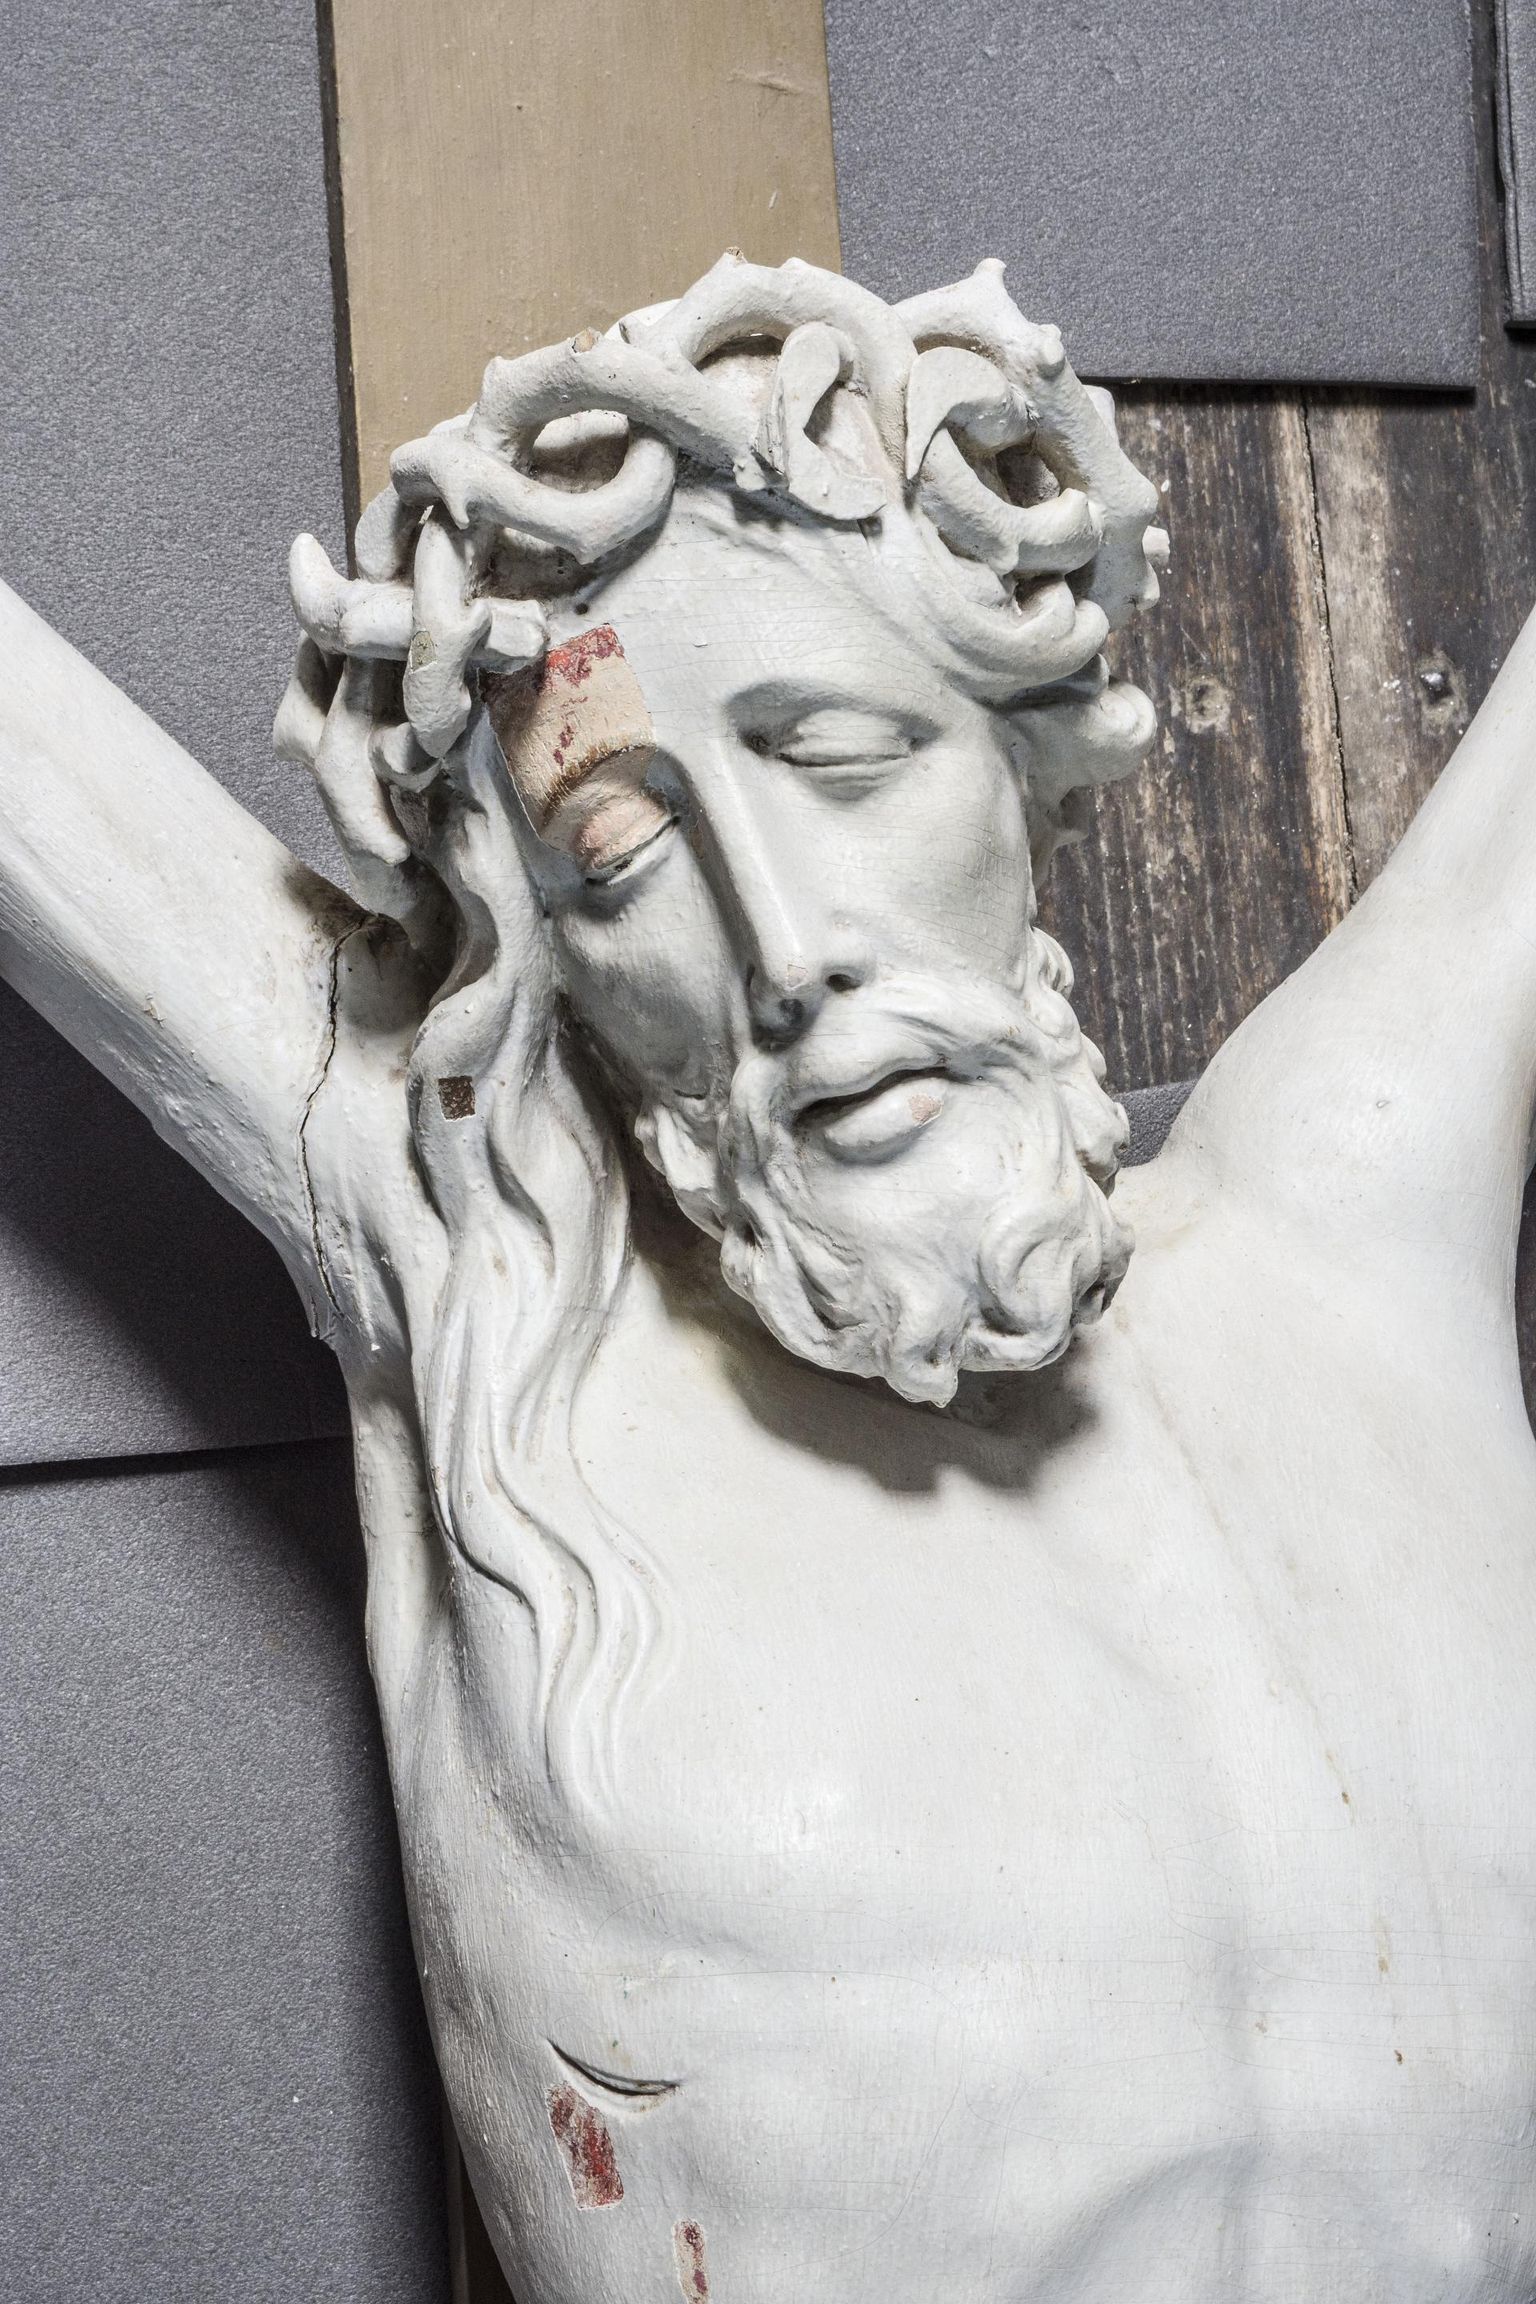 Koeru kiriku krutsifiks on Christian Ackermanni suurepäraste tööde hulgas haruldase meisterlikkusega valmistatud skulptuur.